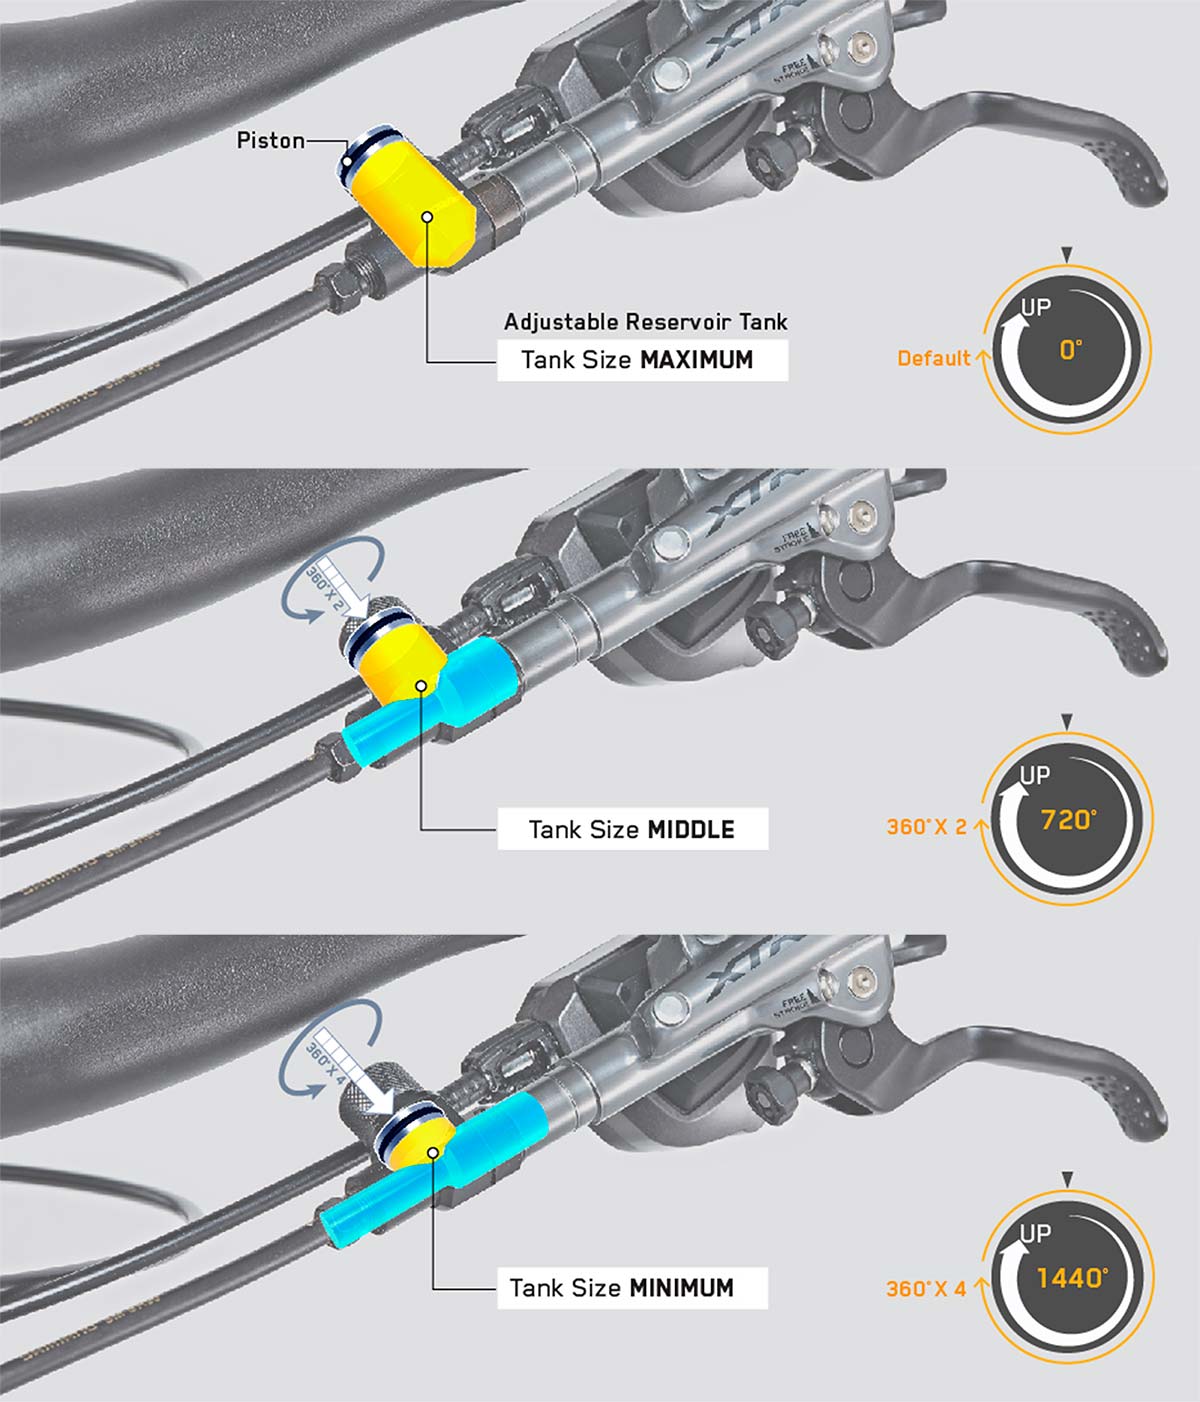 En TodoMountainBike: Outbraker Brake Power Booster, un accesorio para aumentar la potencia de frenada de la bici